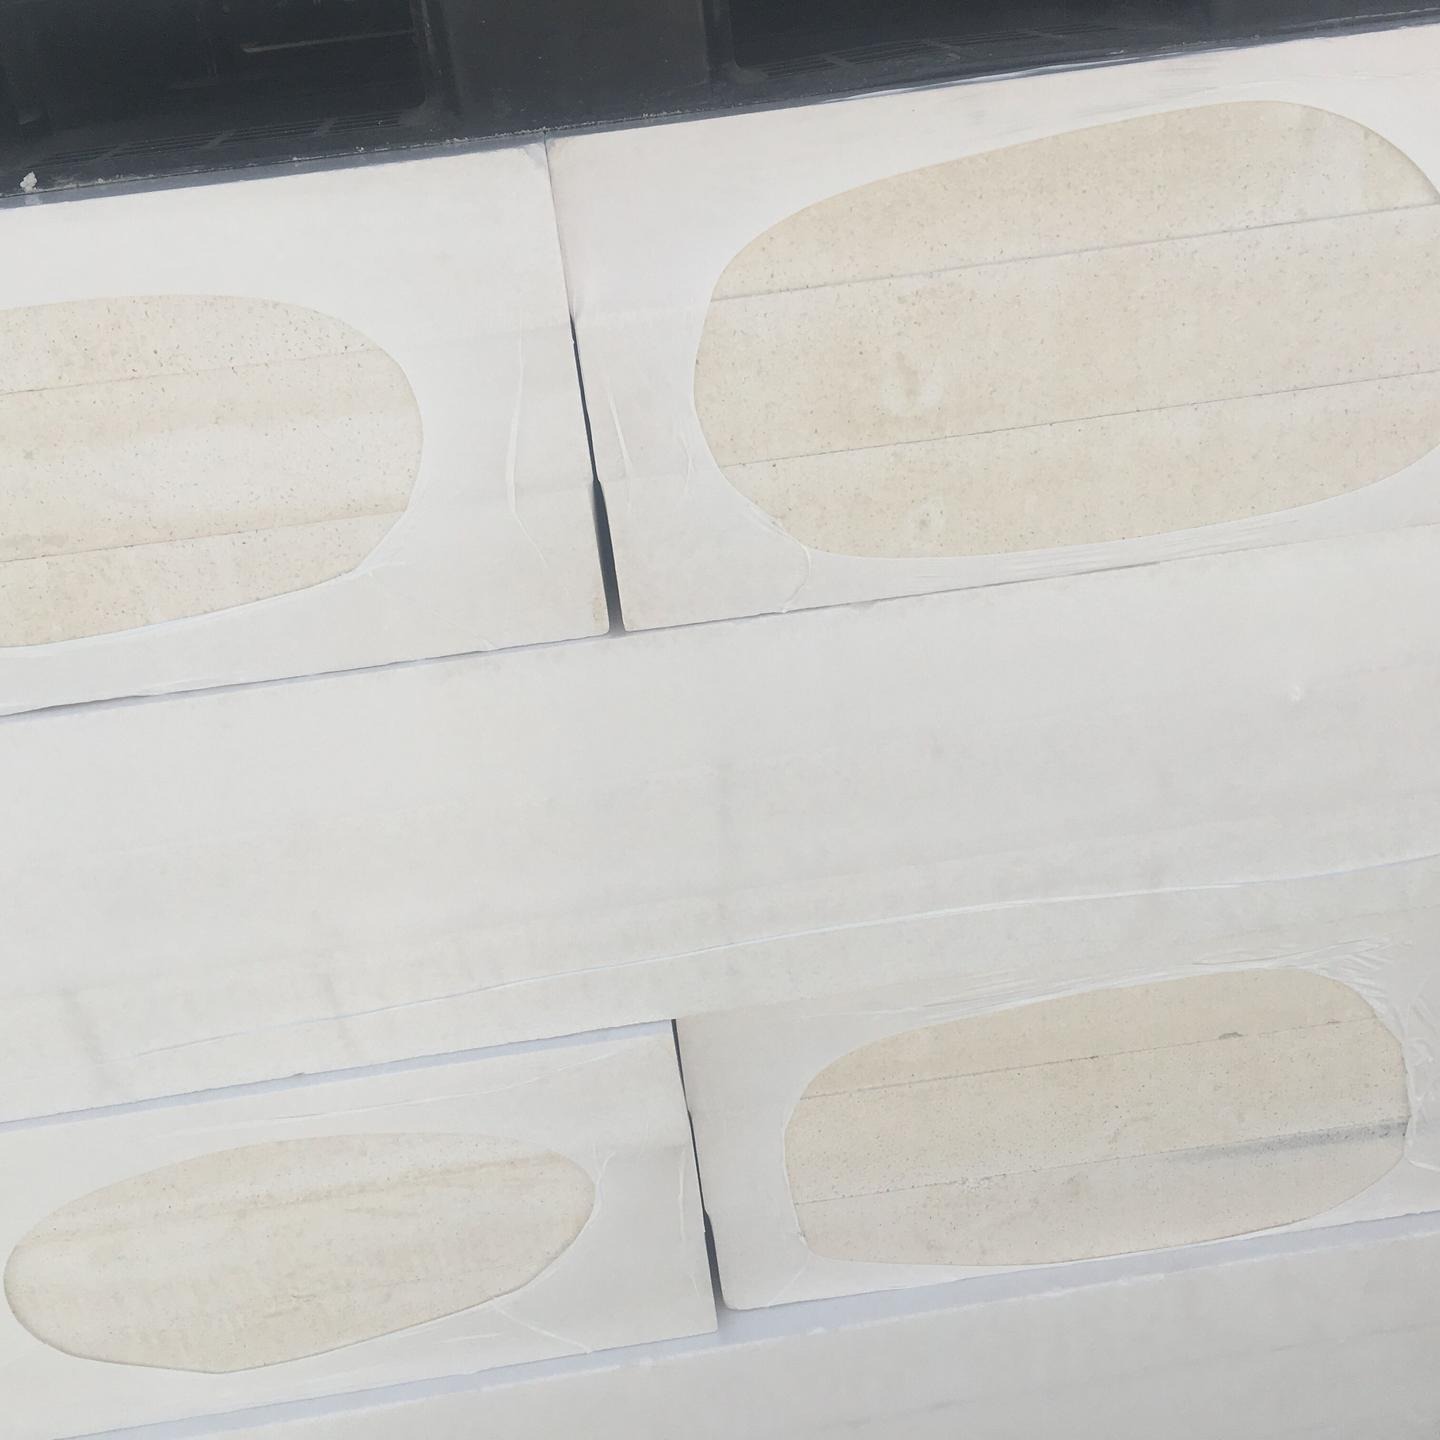 犇腾厂家直销硅质板 无机渗透型防火保温板 AEPS保温板 硅质板规格齐全